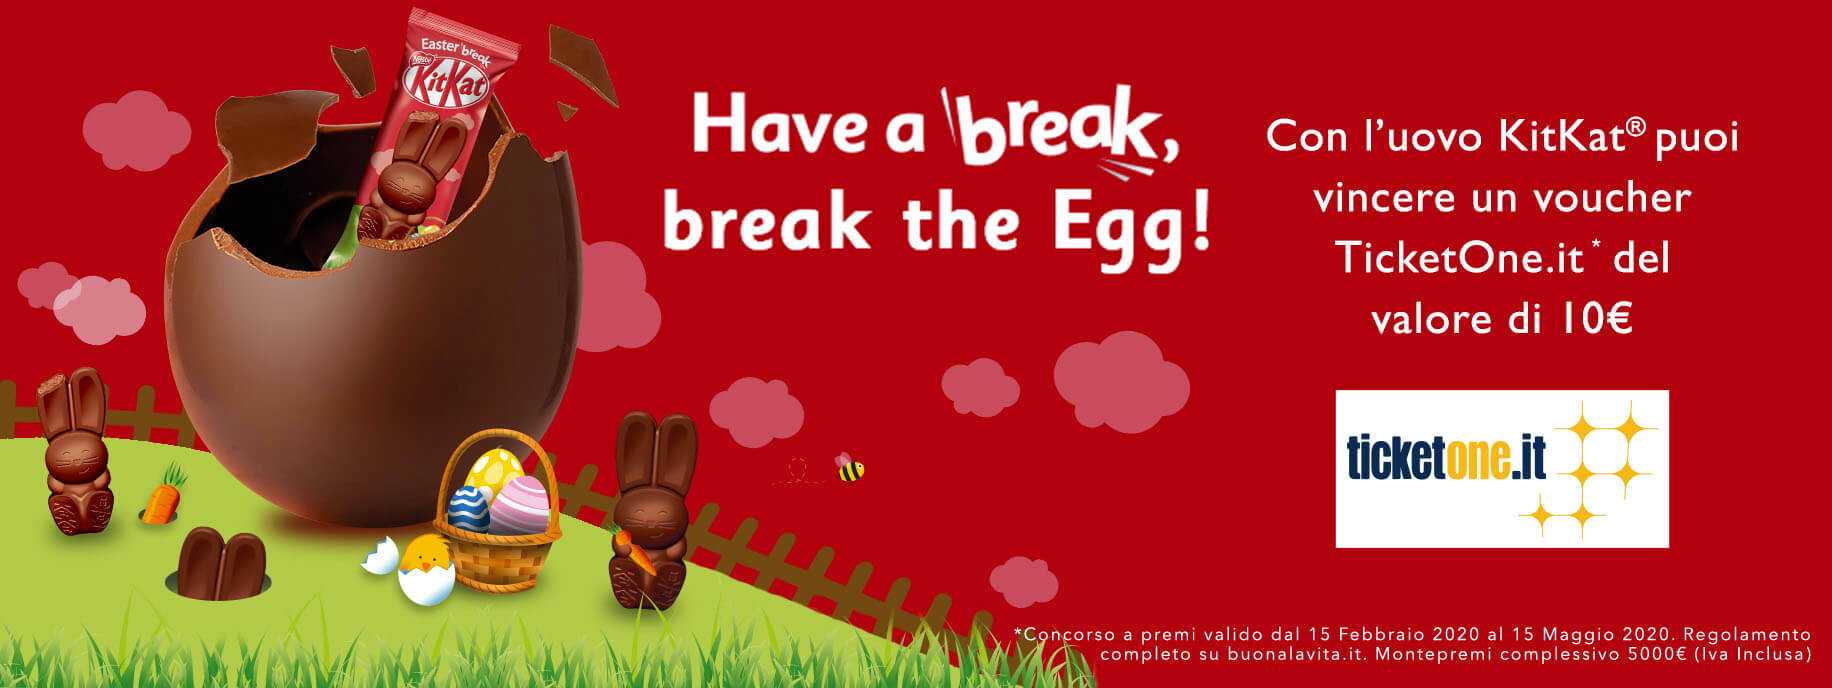 Have a break, break the Egg! - Vinci un voucher TicketOne.it con KitKat! 